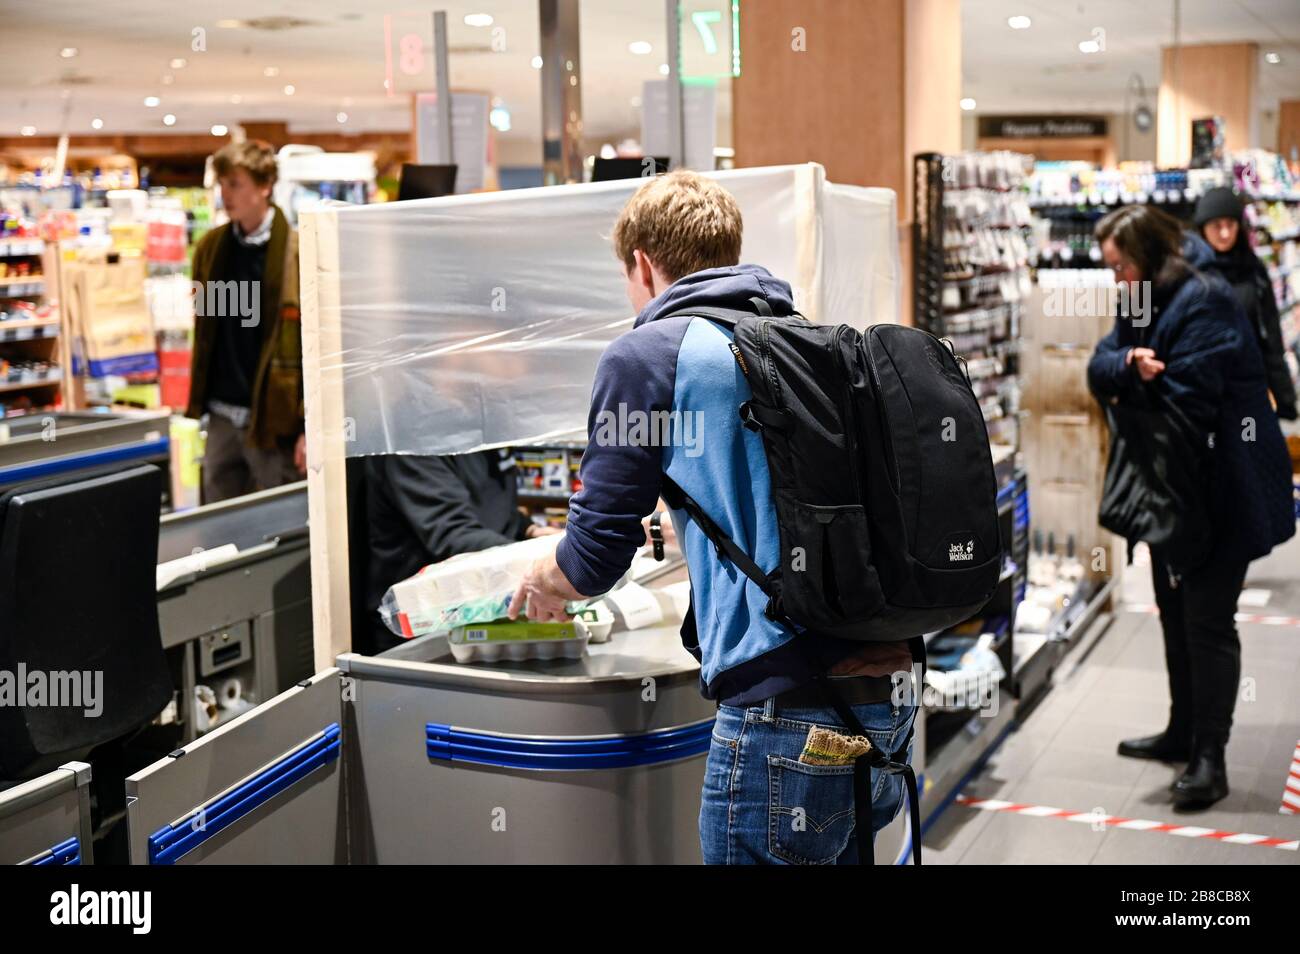 ALEMANIA, Hamburgo, Corona virus, COVID-19 , supermercado con protección para el cajero para evitar infecciones Foto de stock